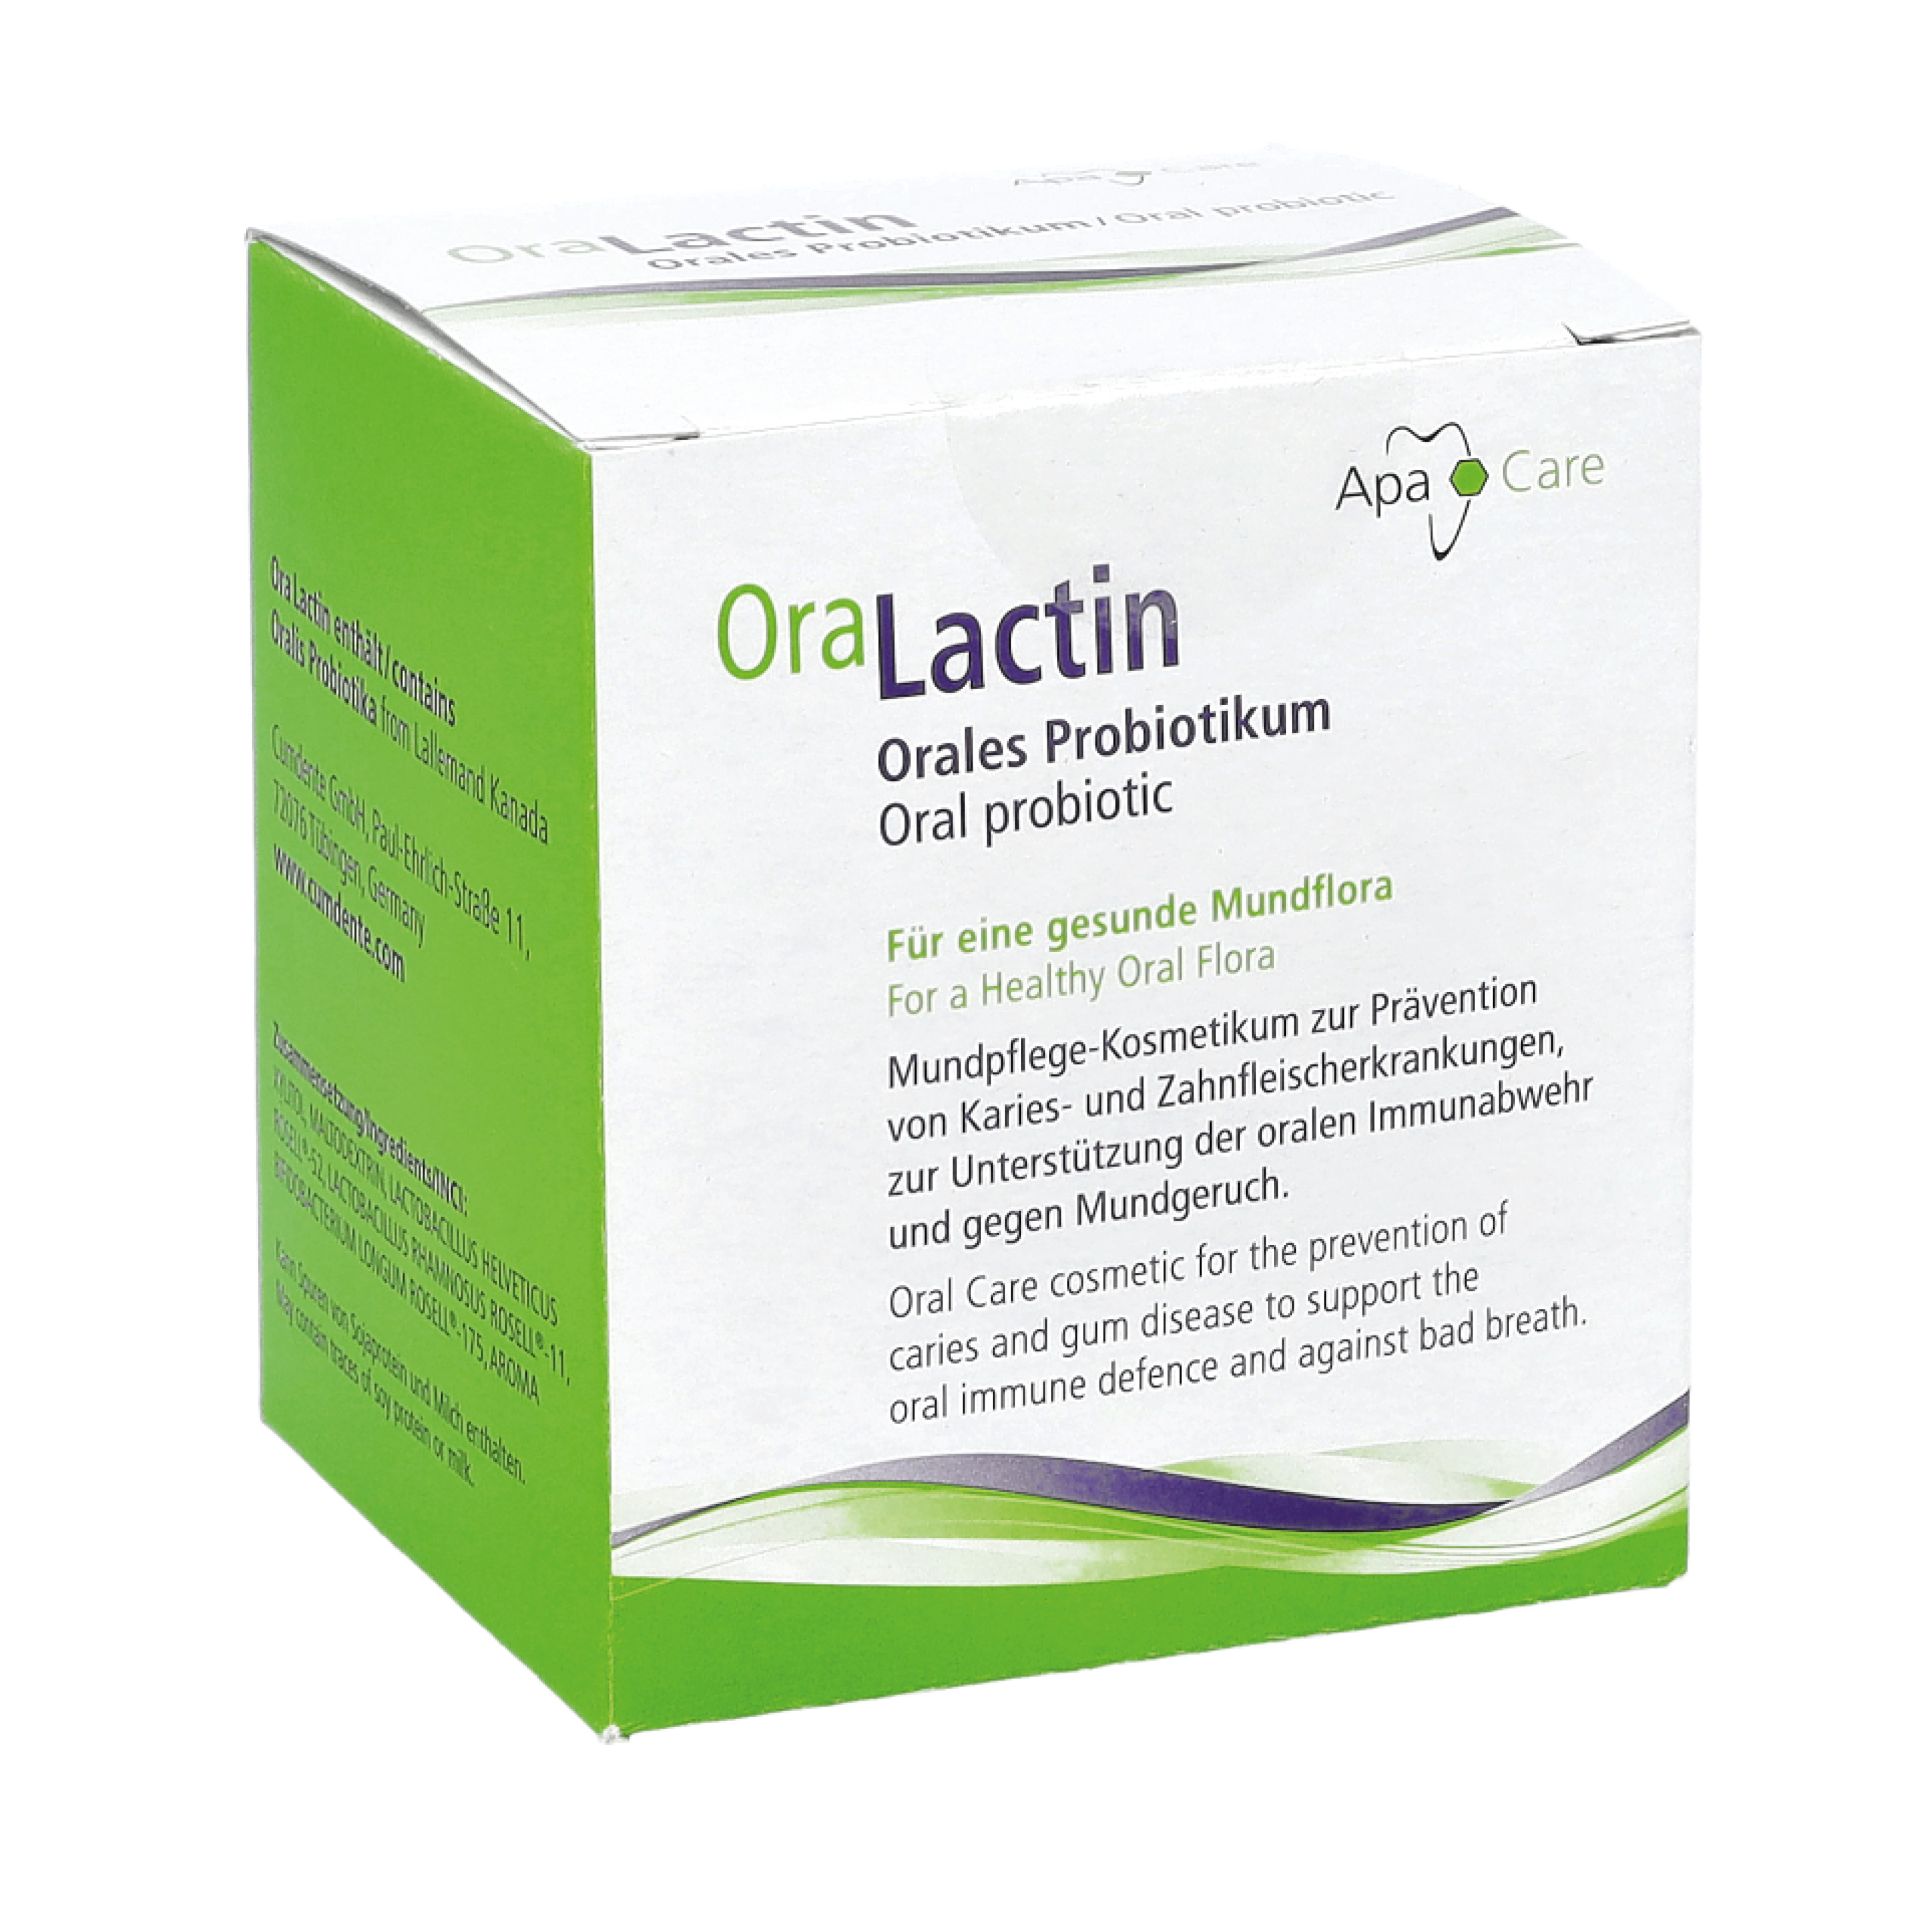 OraLactin – Orales Probiotikum (Sachets)